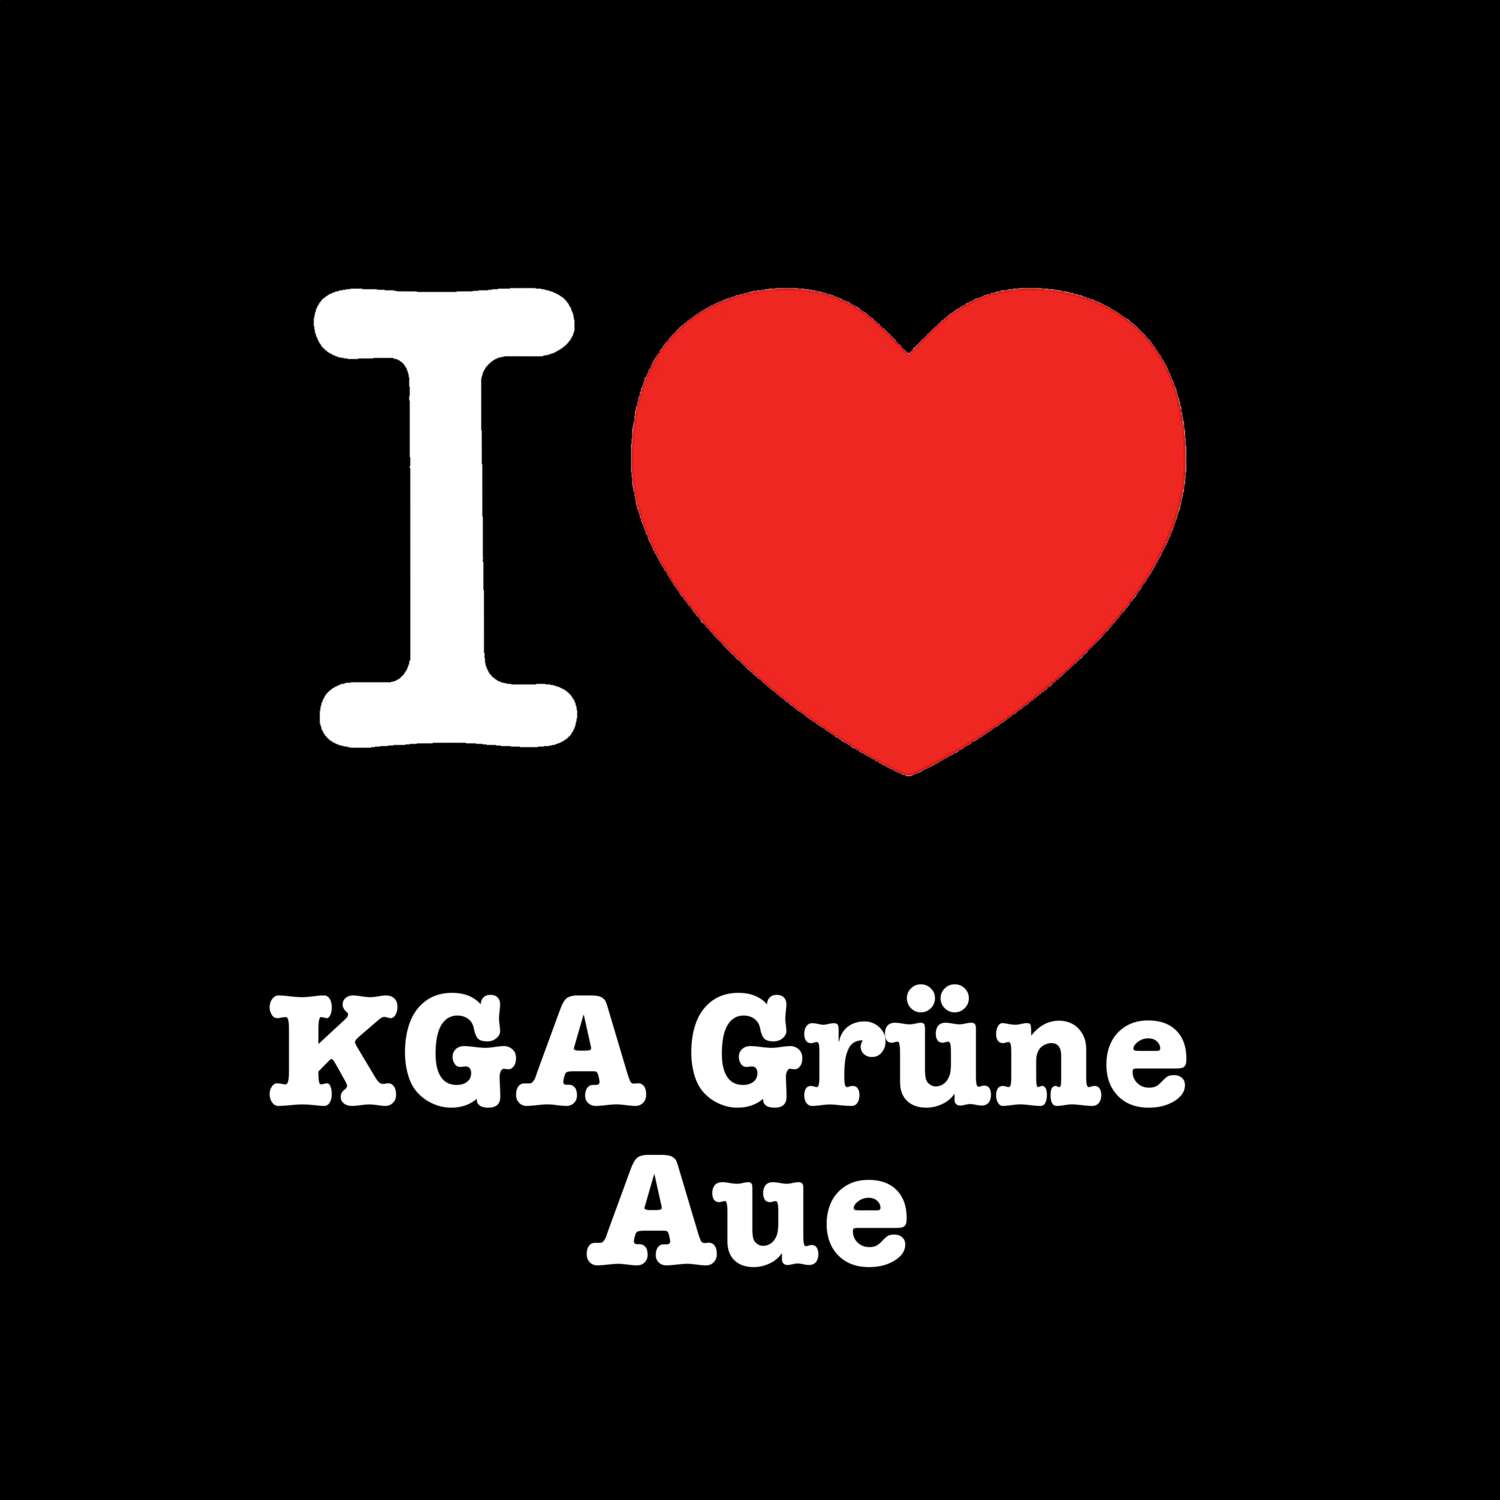 KGA Grüne Aue T-Shirt »I love«